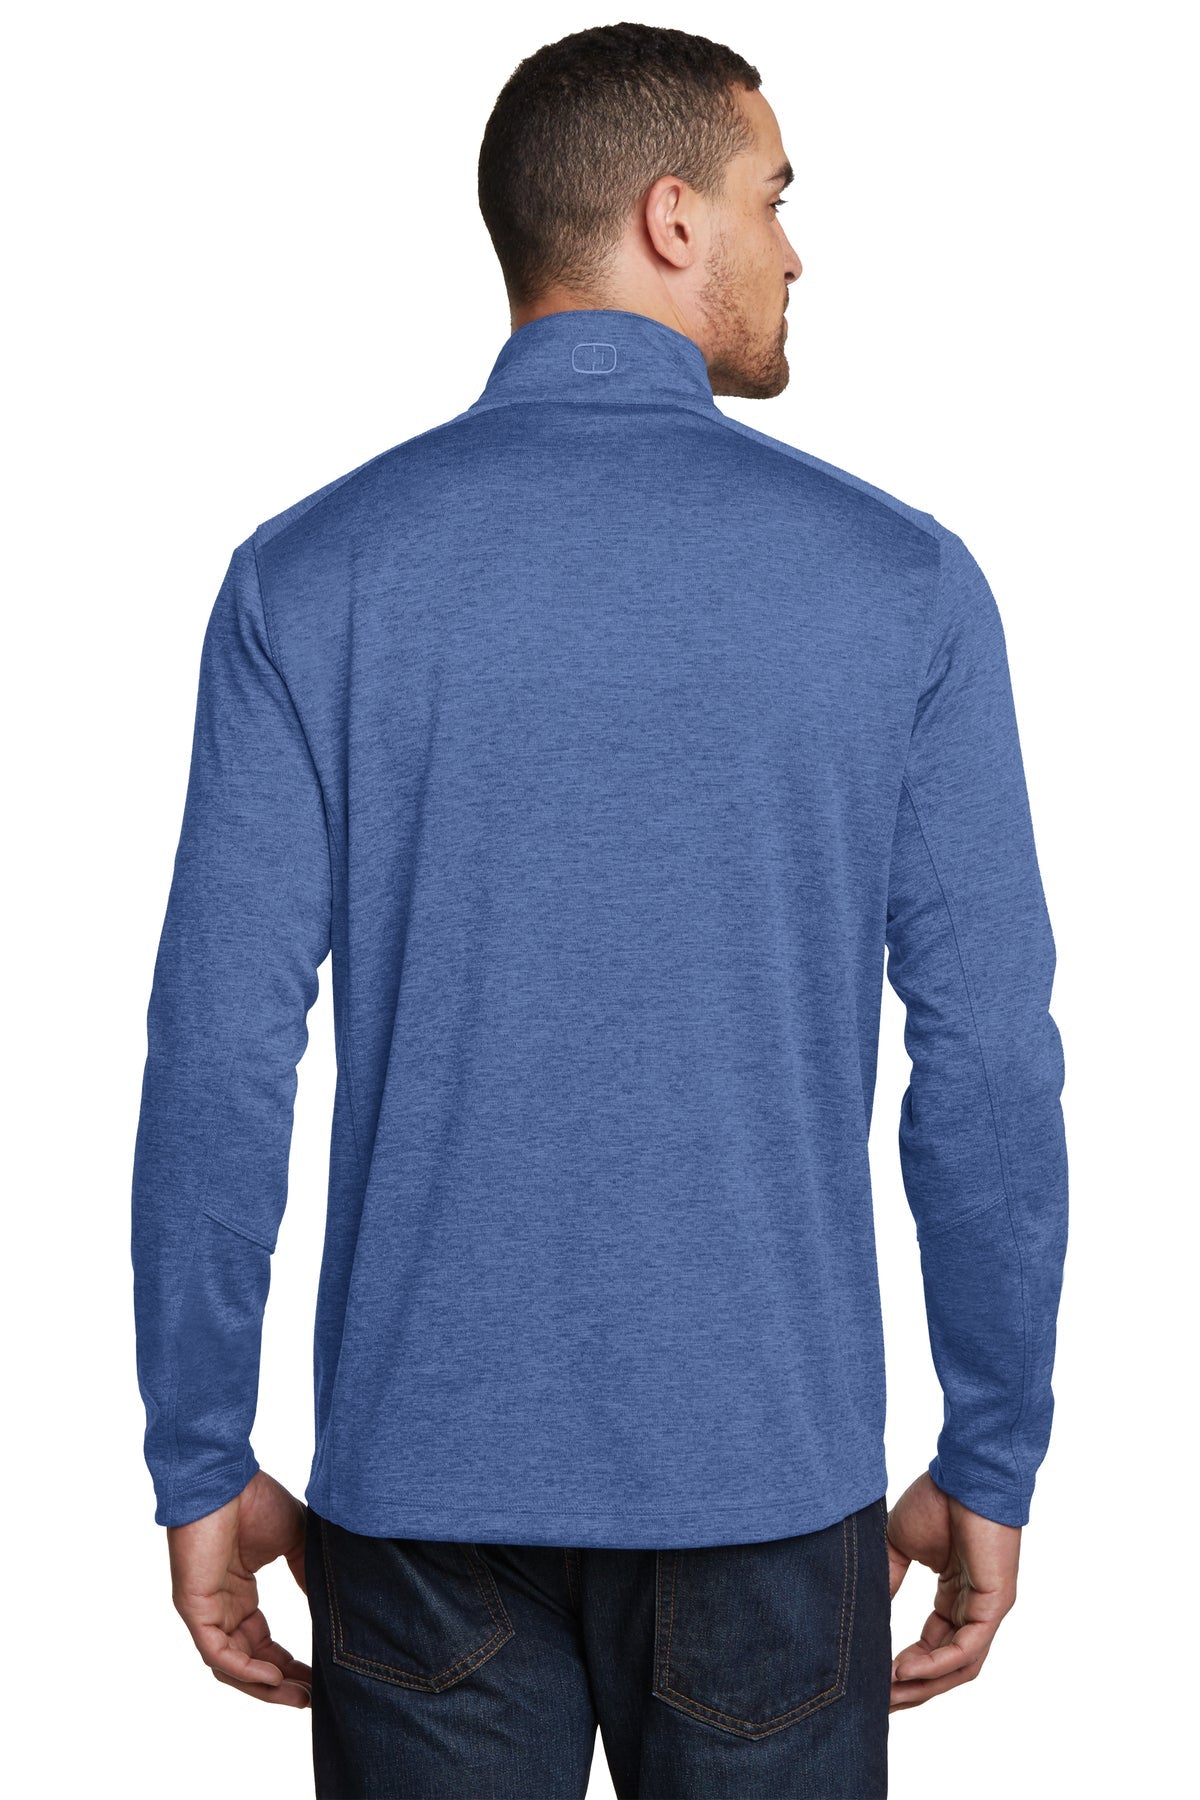 ogio_og202 _optic blue_company_logo_sweatshirts